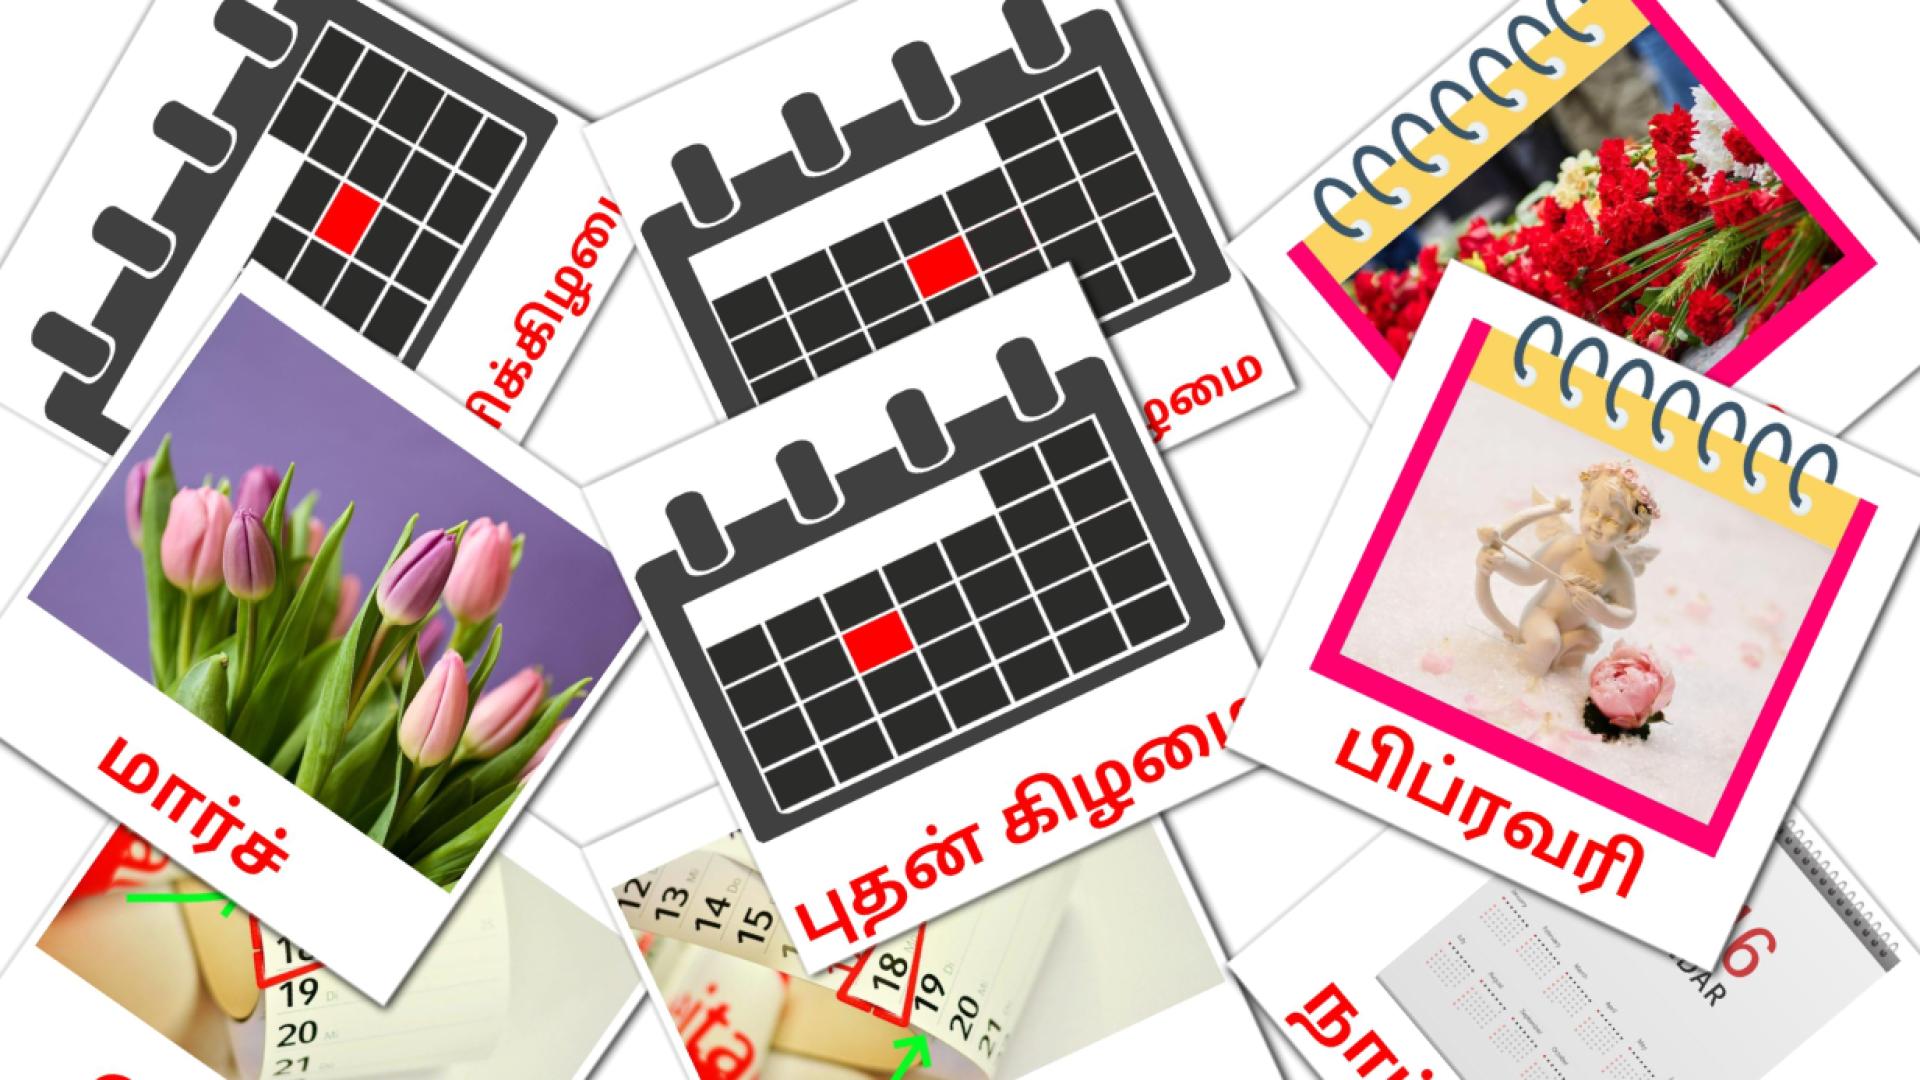 Tamilisch நாட்காட்டிe Vokabelkarteikarten